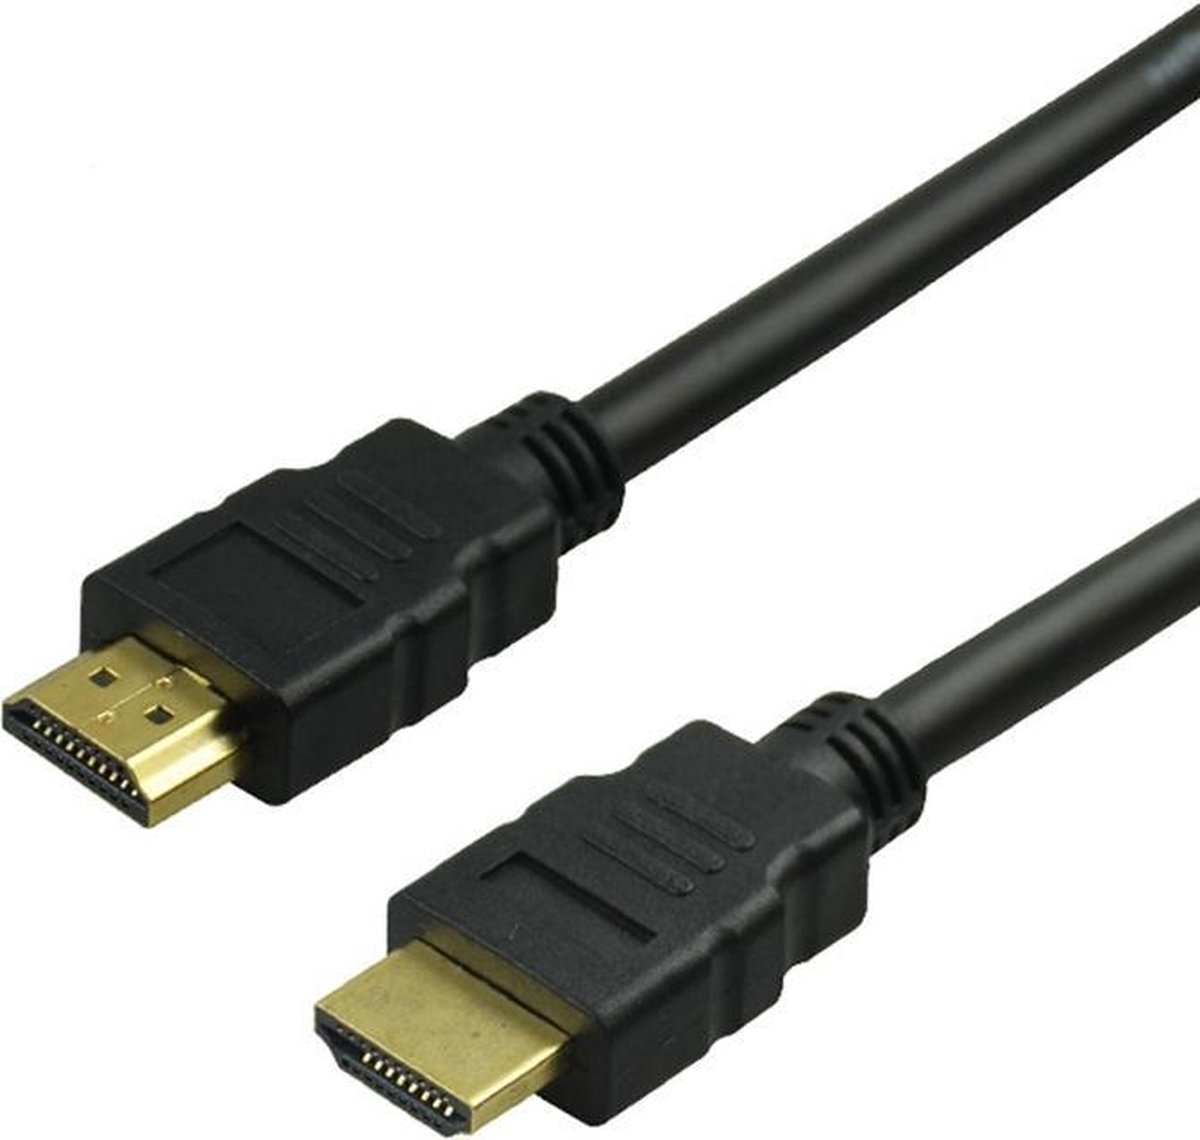 1.4 High Speed HDMI kabel - 1,5 m - Zwart - Merkloos